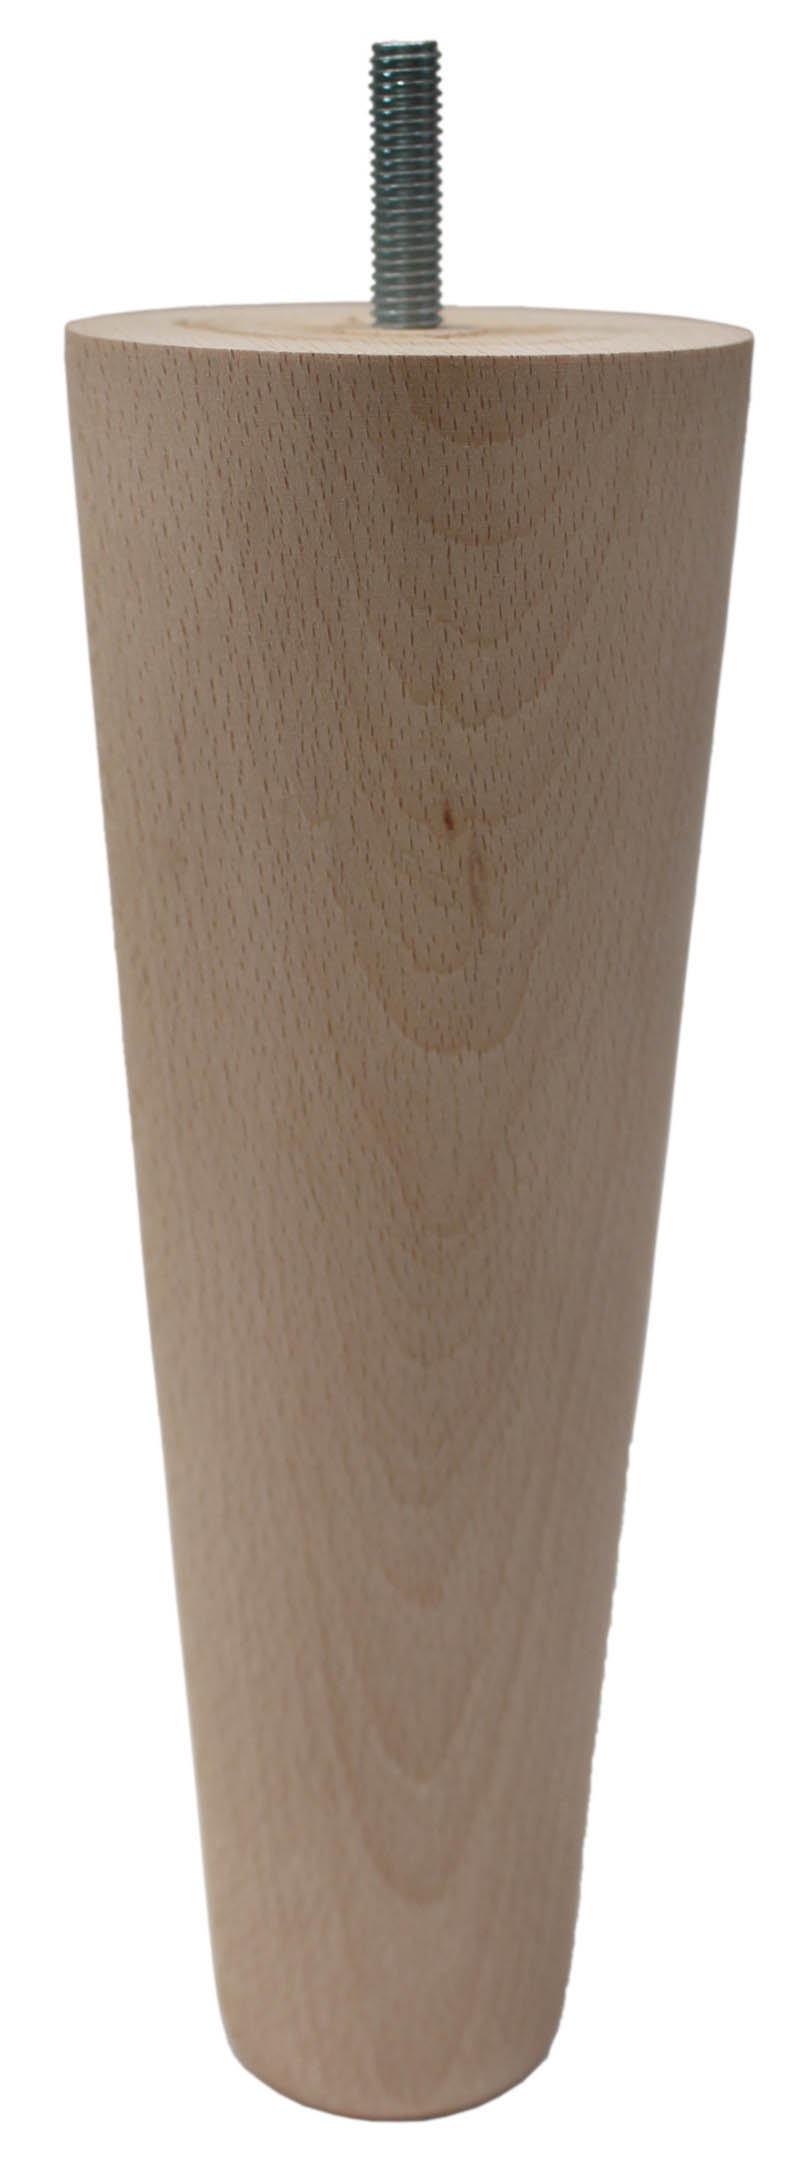 Tamara Tall Tapered Wooden Furniture Legs - Raw Finish - Set of 4